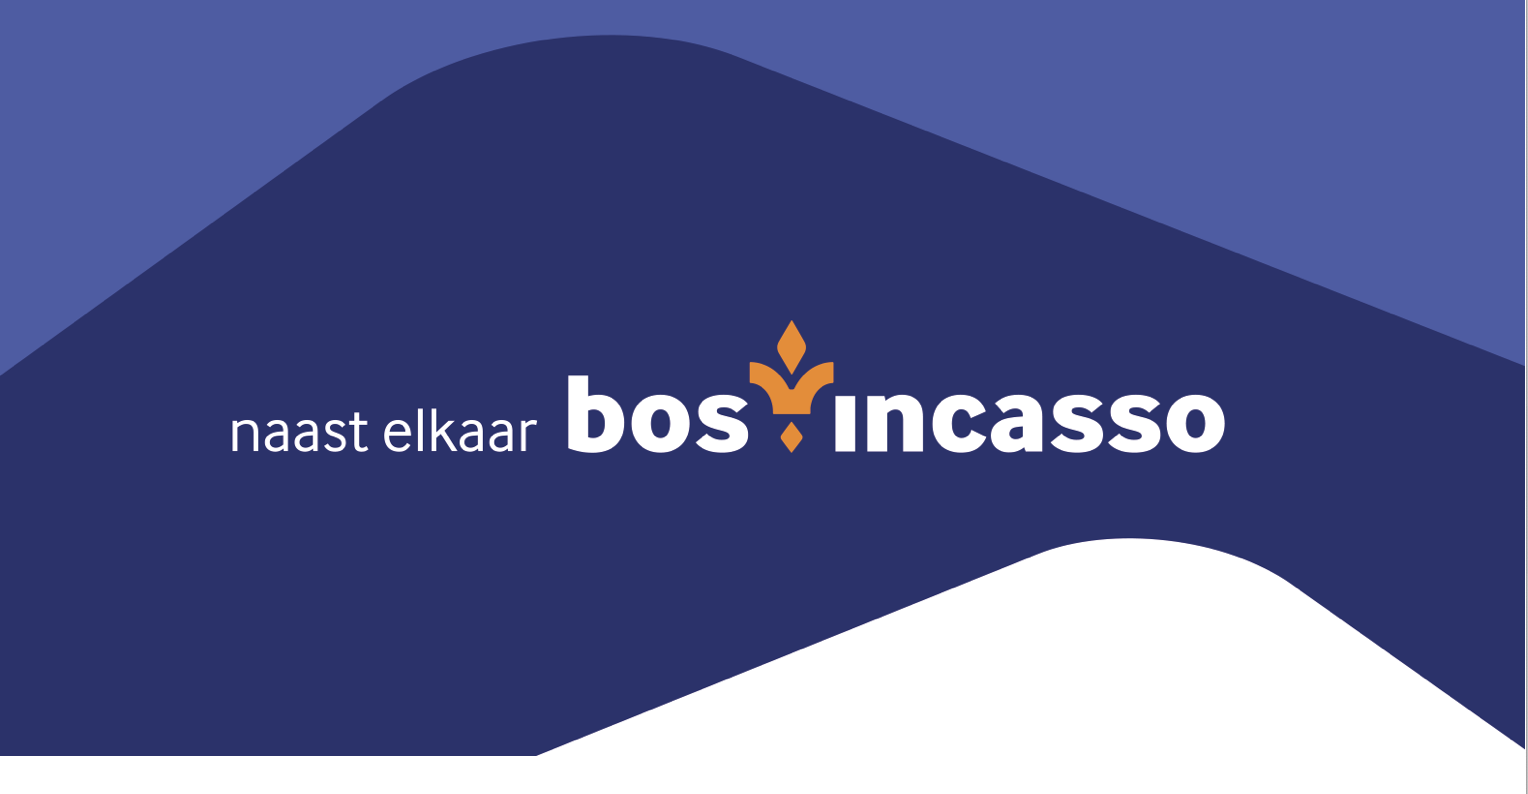  Bos Incasso lanceert rebranding